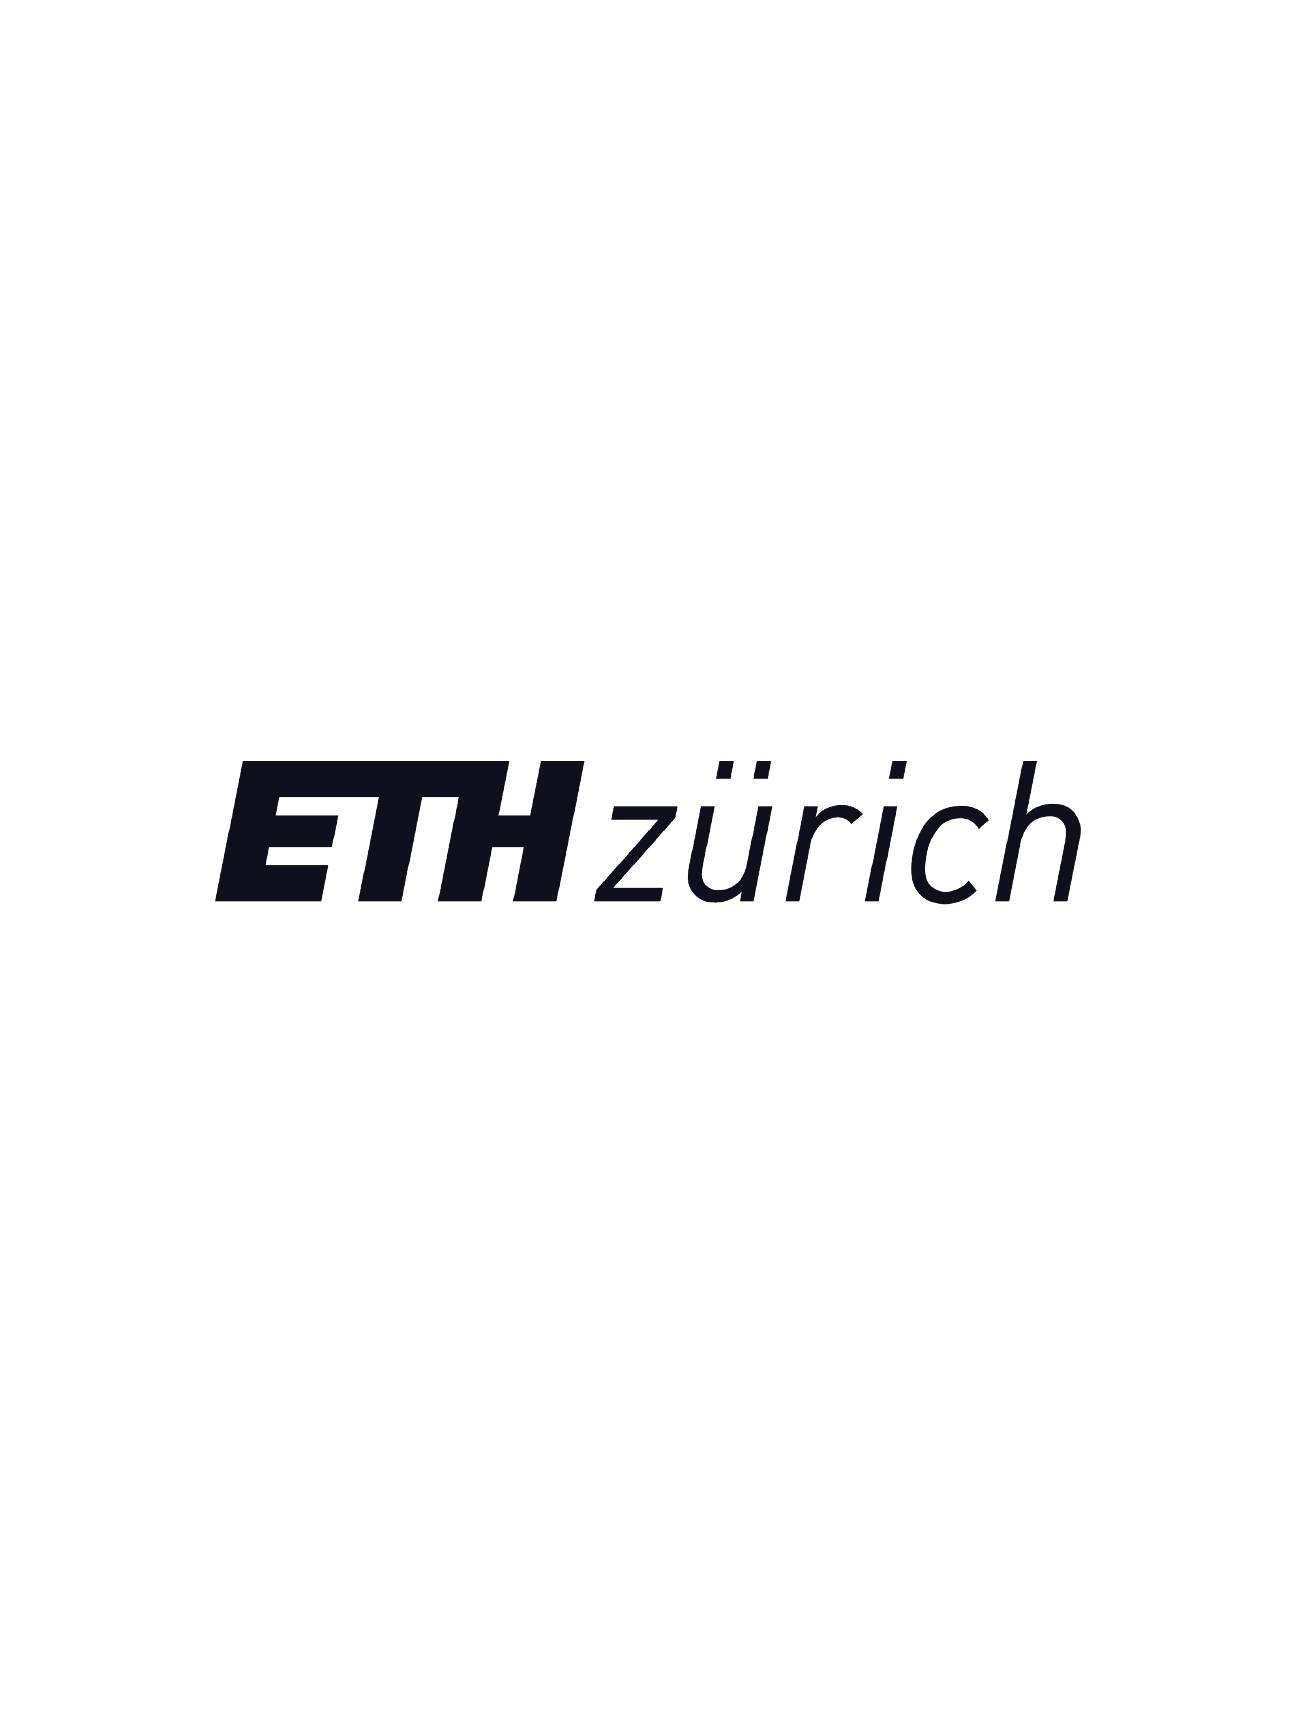 ETH zurich logo